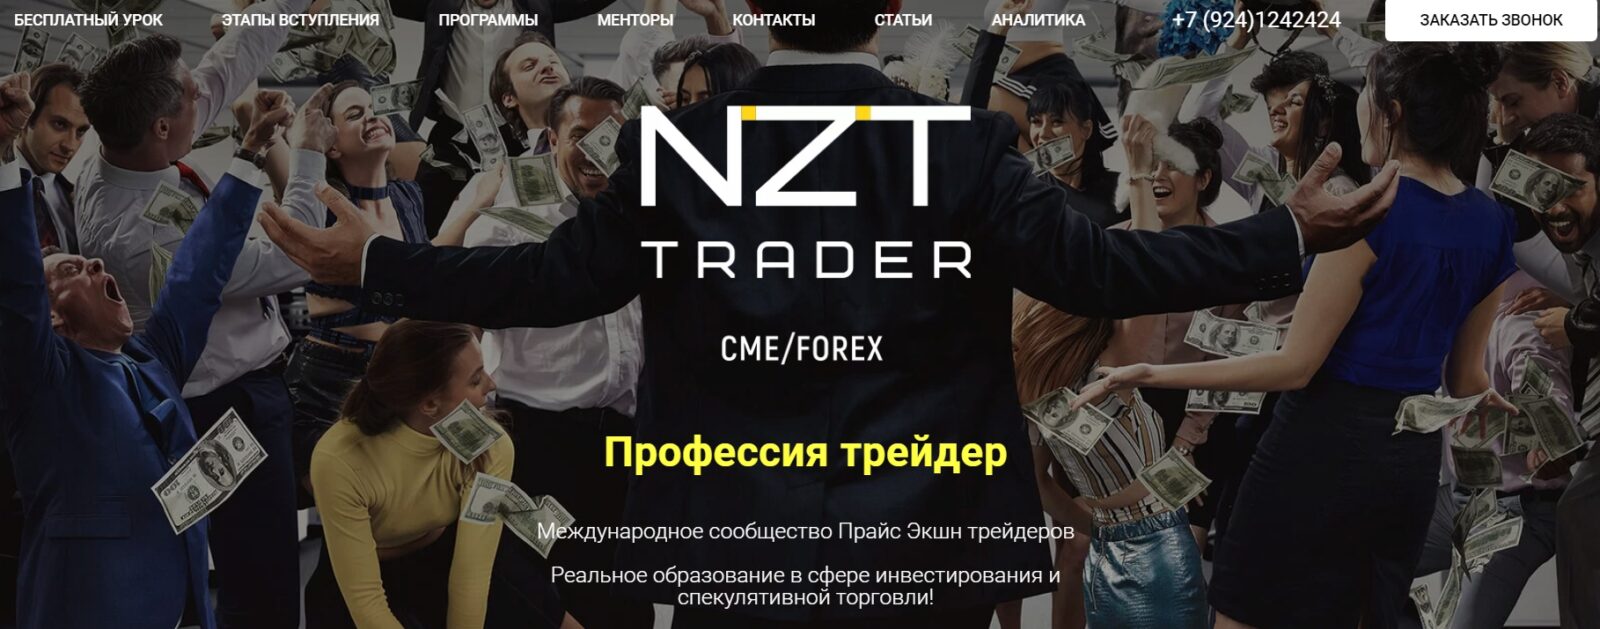 Сообщество NZT Trader